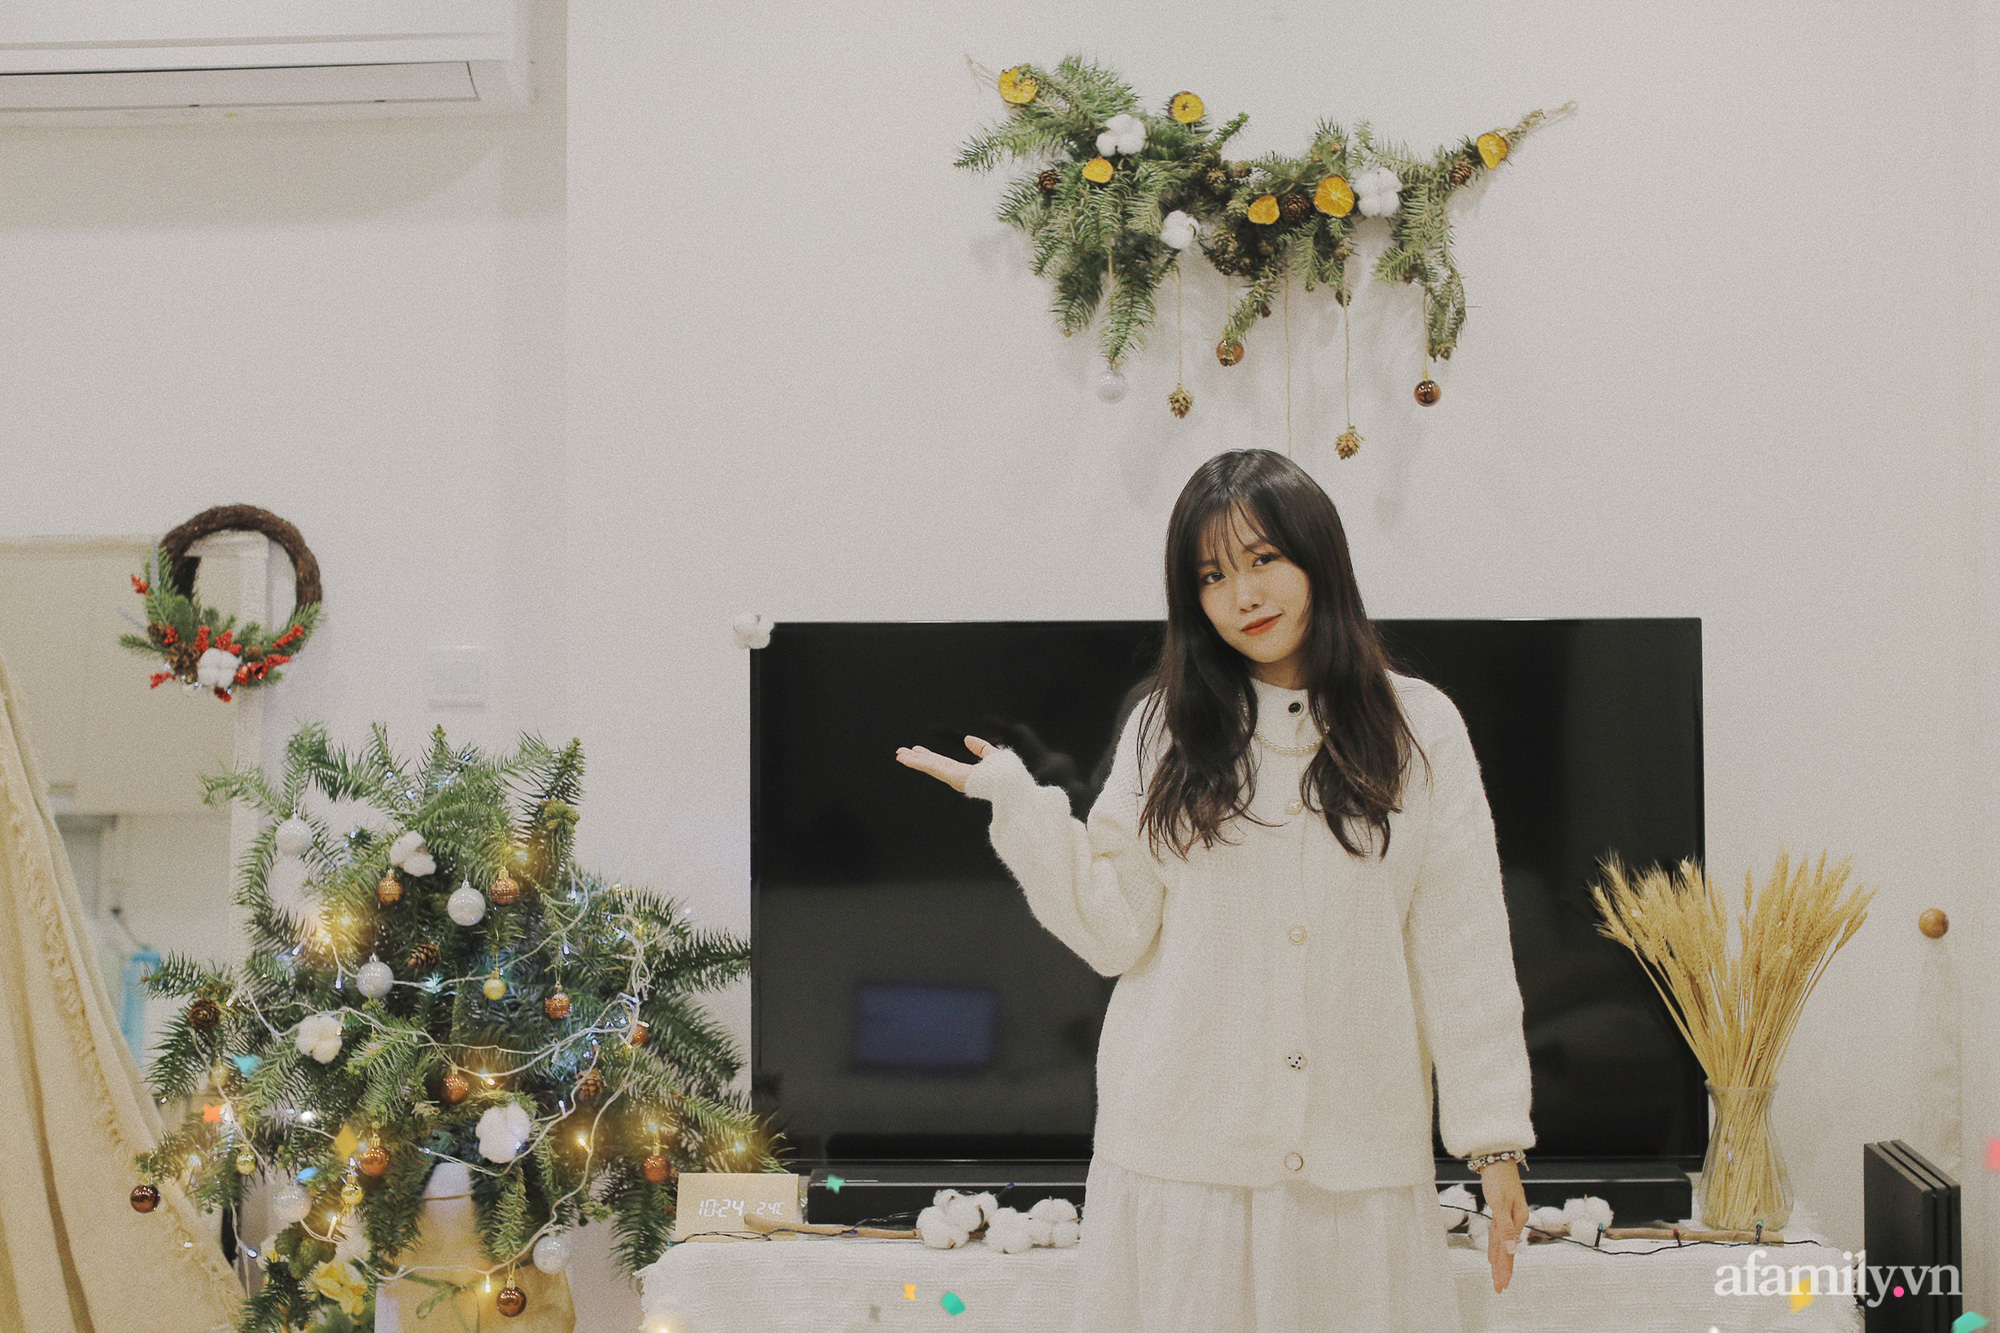 Chỉ bỏ ra hơn 100k mua cành thông, cô gái Hà Nội tận dùng đồ đạc biến nhà thành studo chụp ảnh Giáng sinh siêu xinh xắn - Ảnh 9.